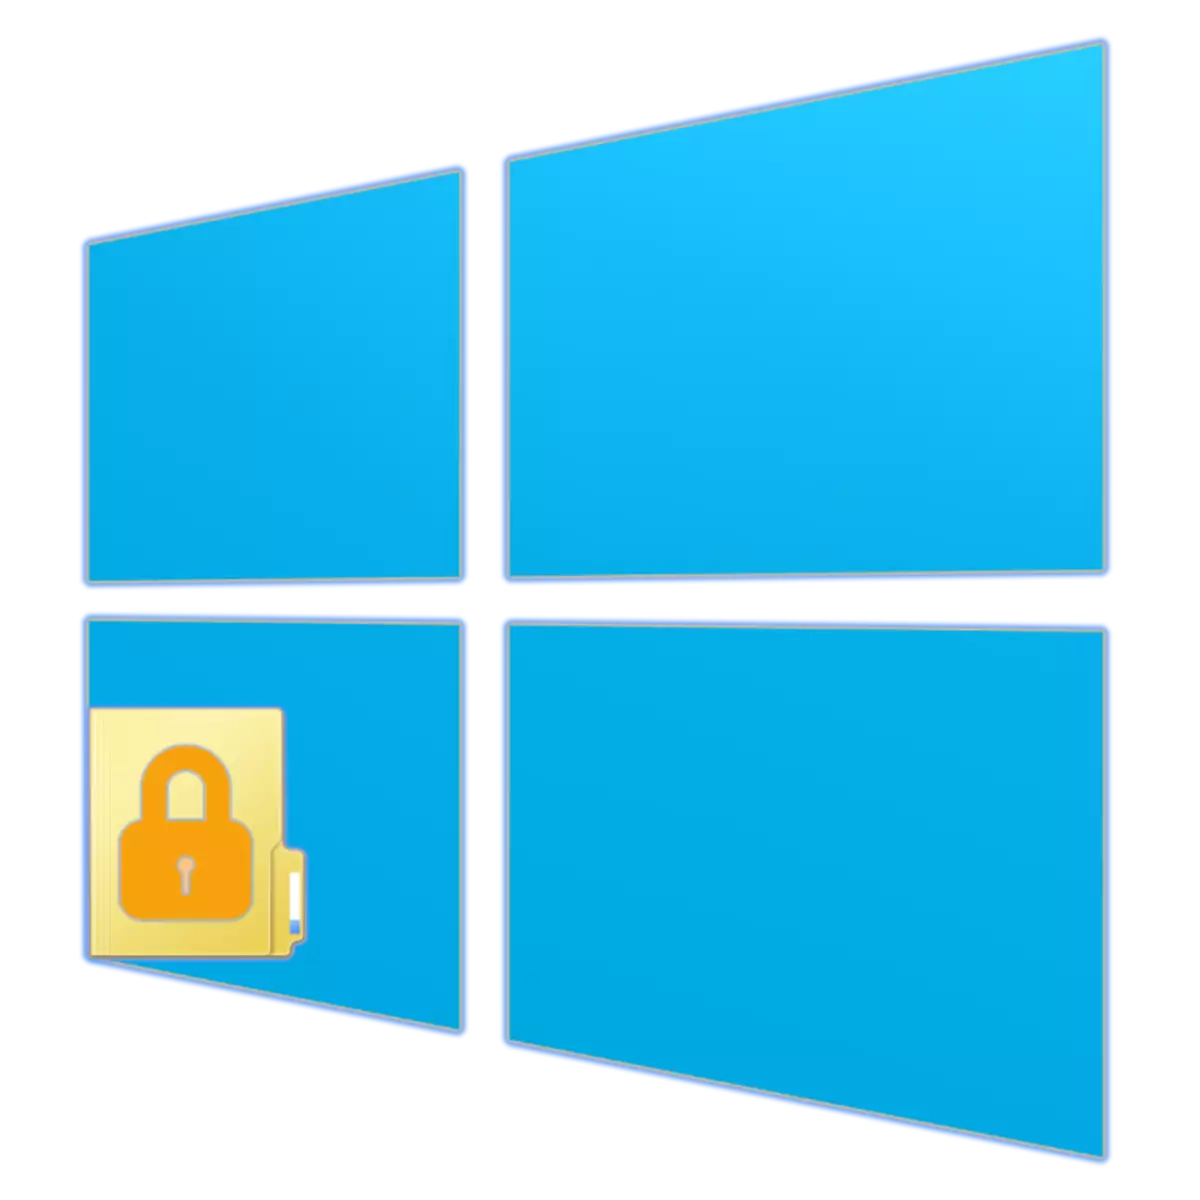 Come mettere una password alla cartella in Windows 10